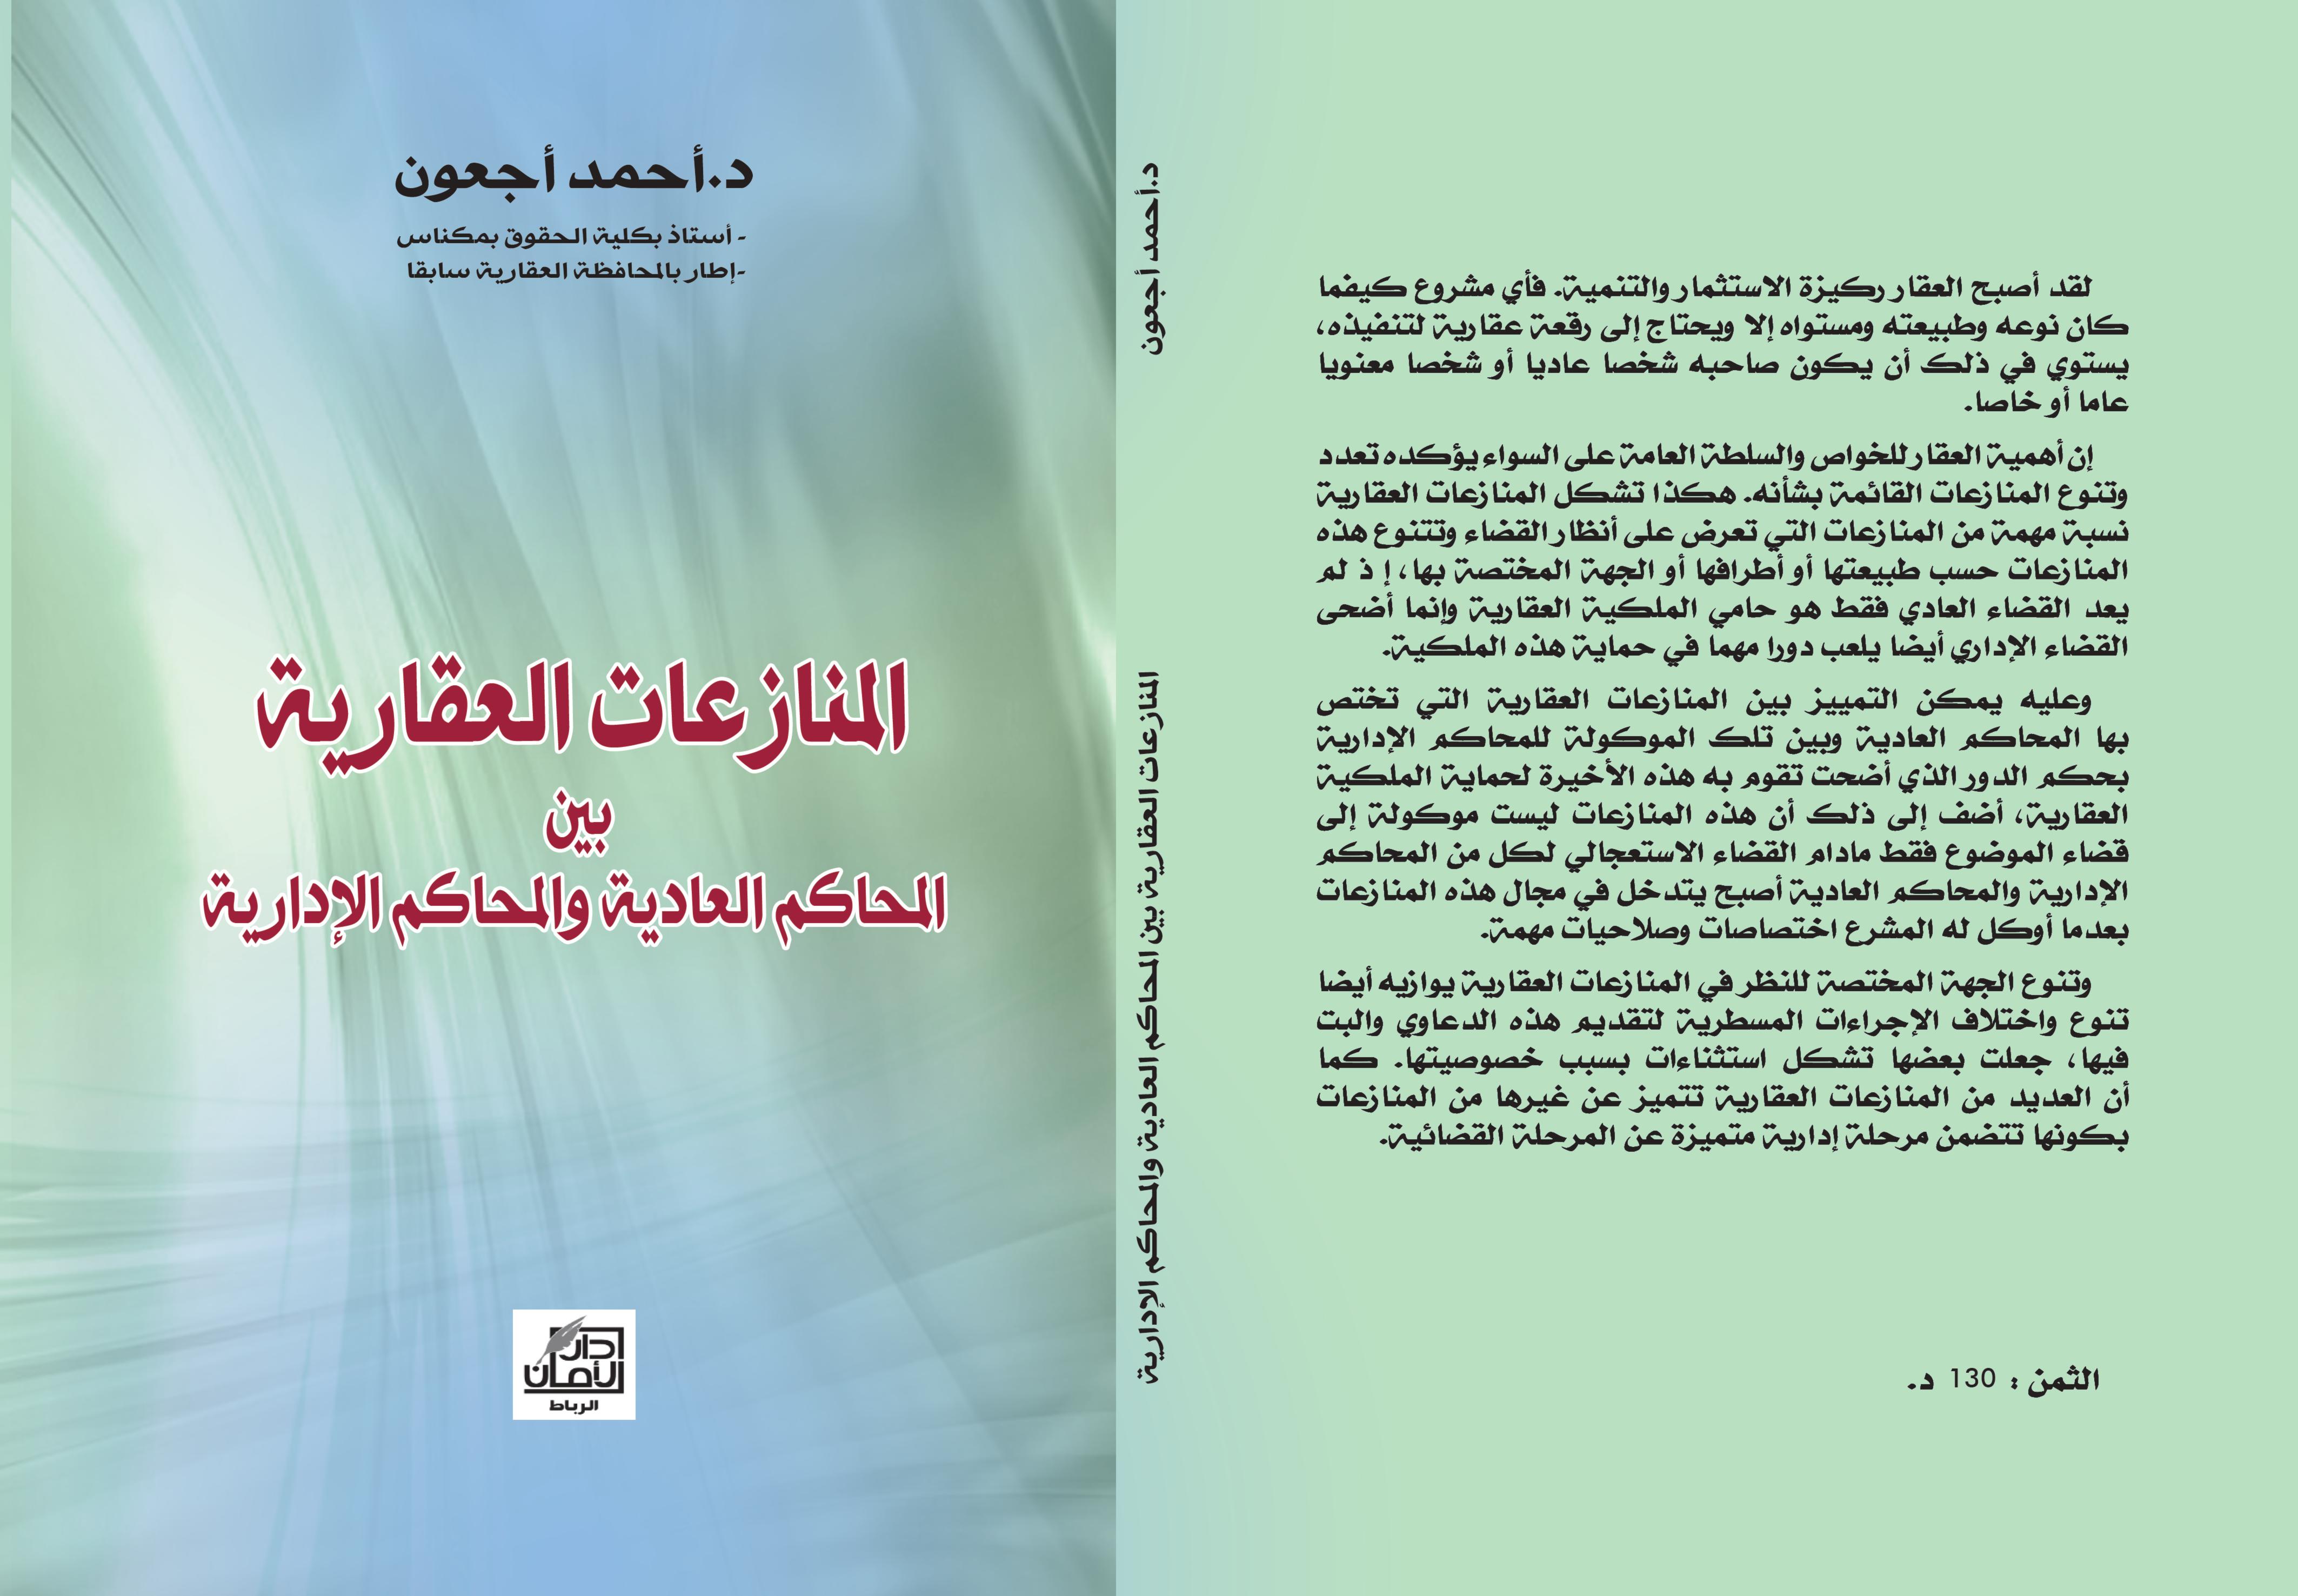 آخر إصدارات الدكتور أحمد أجعون مؤلف تحت عنوان المنازعات العقارية بين المحاكم العادية والمحاكم الإدارية